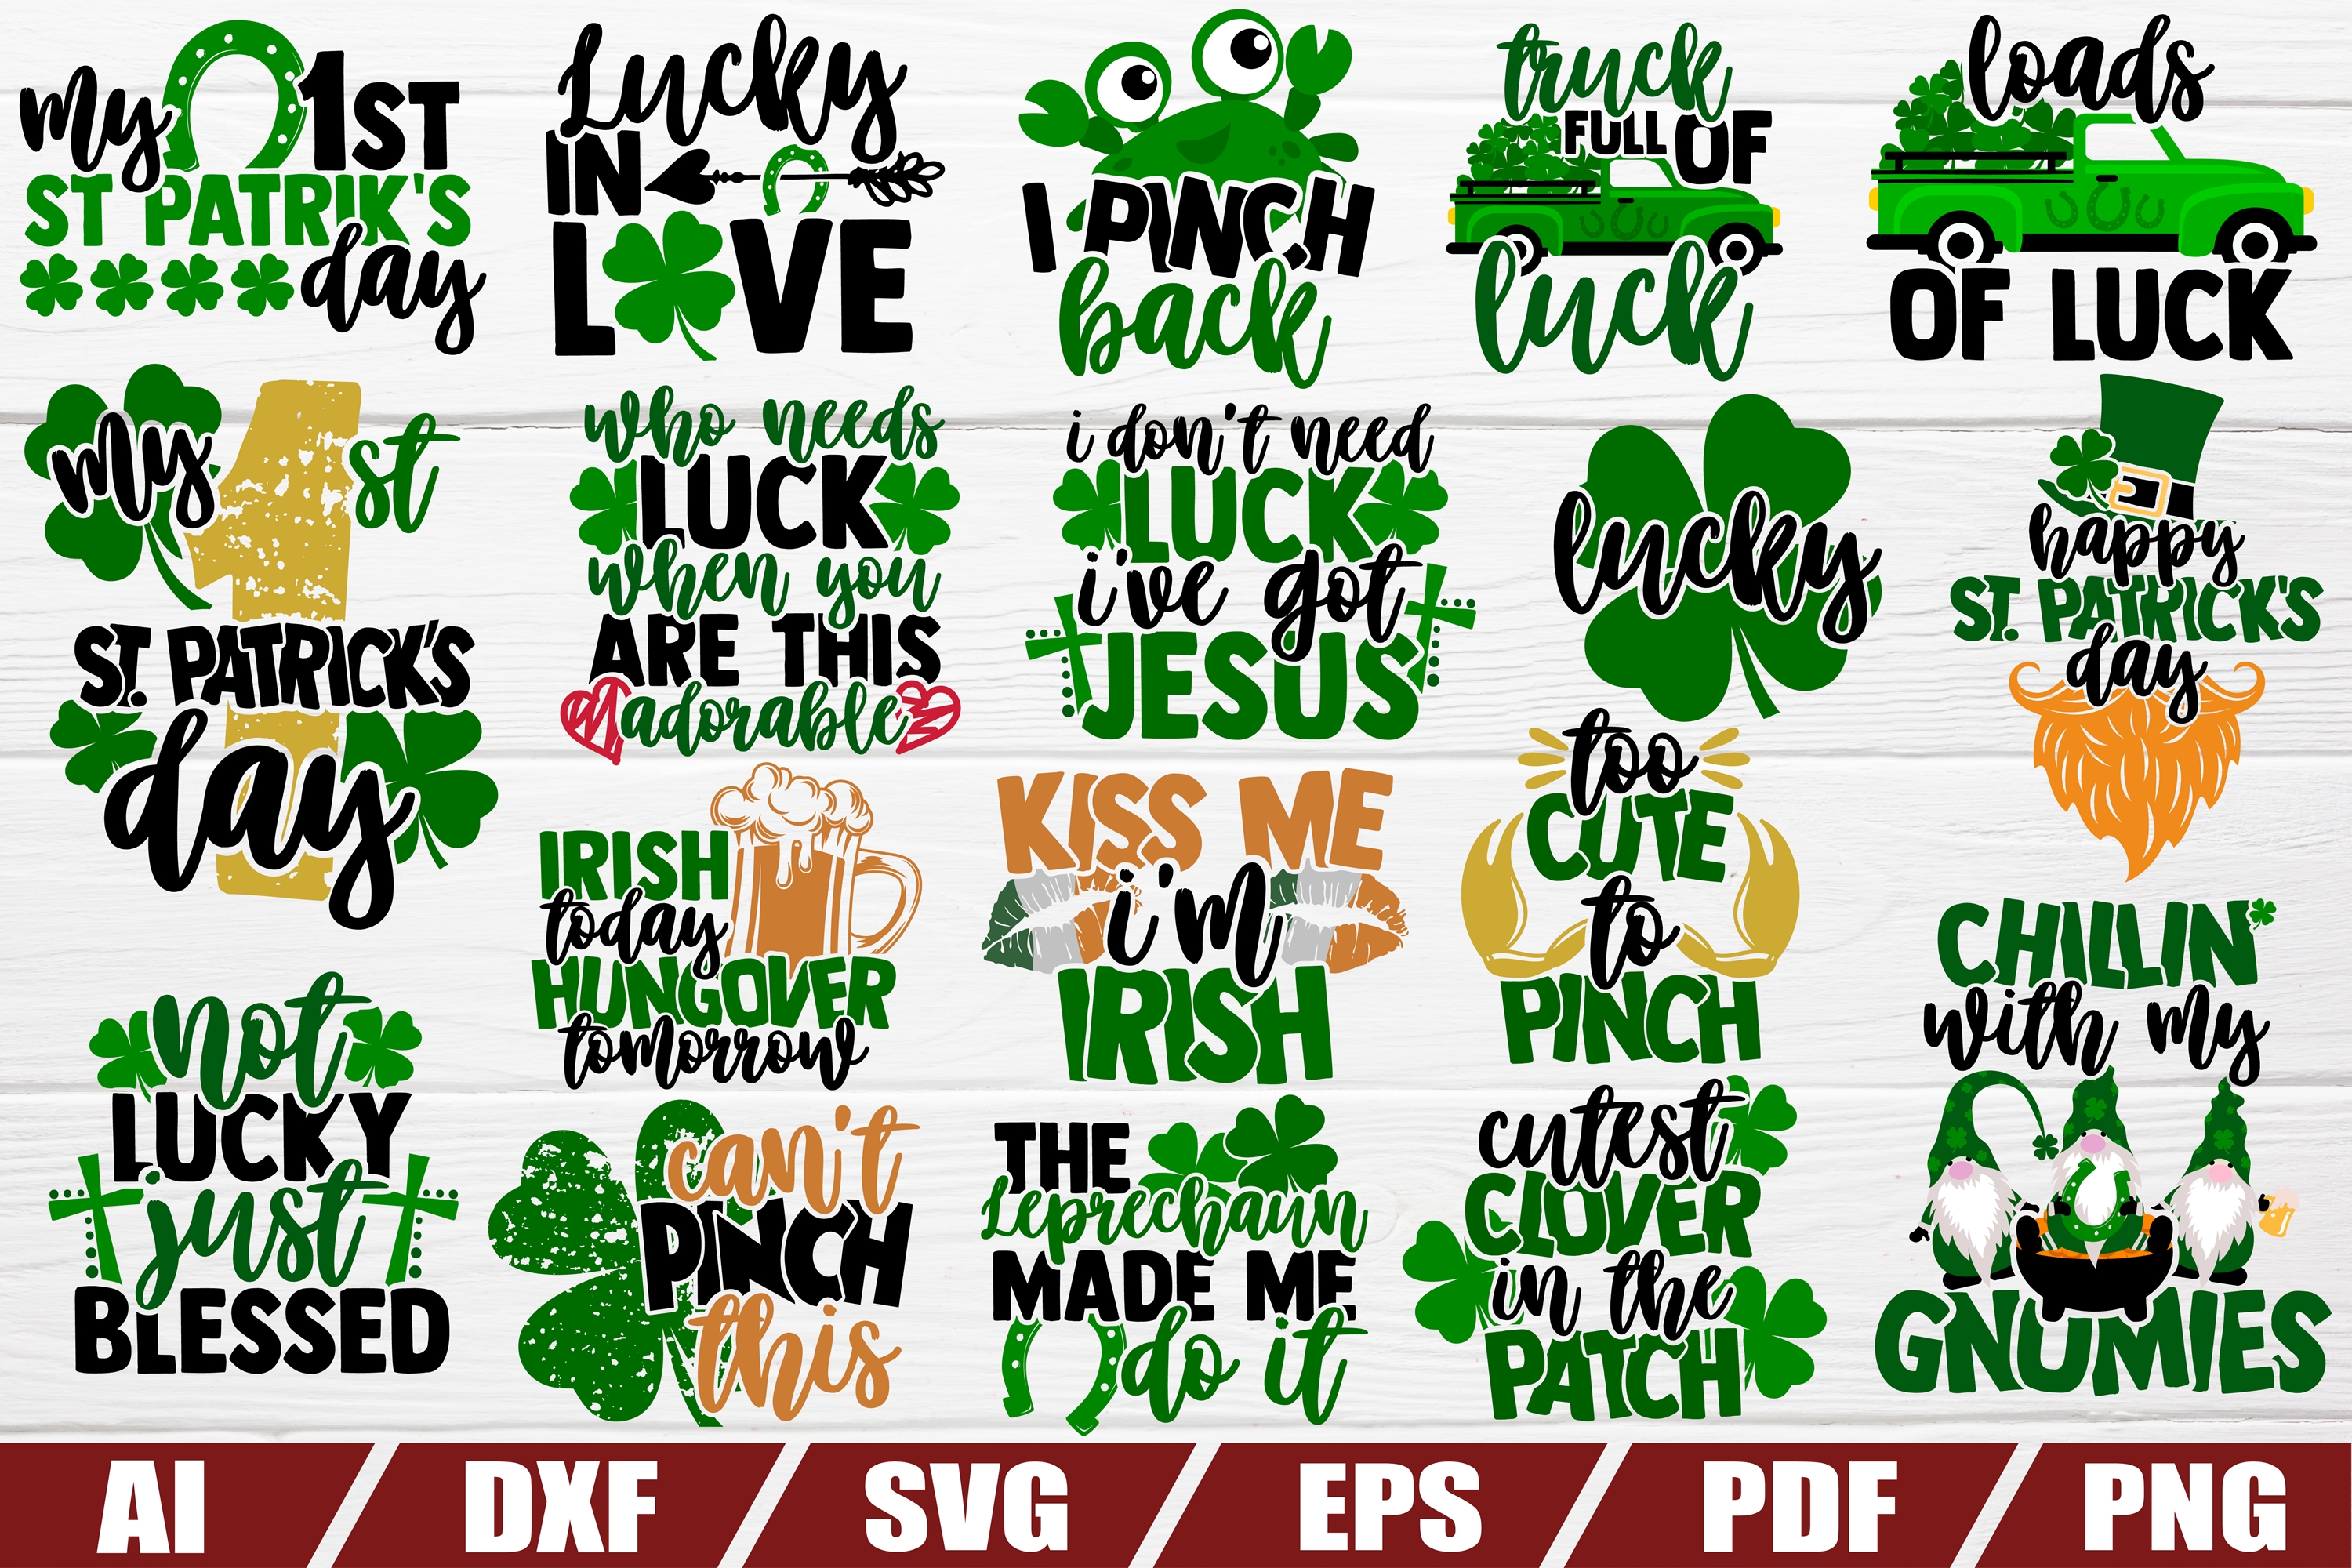 Download St Patricks day bundle SVG - 23 designs - DXF file - EPS